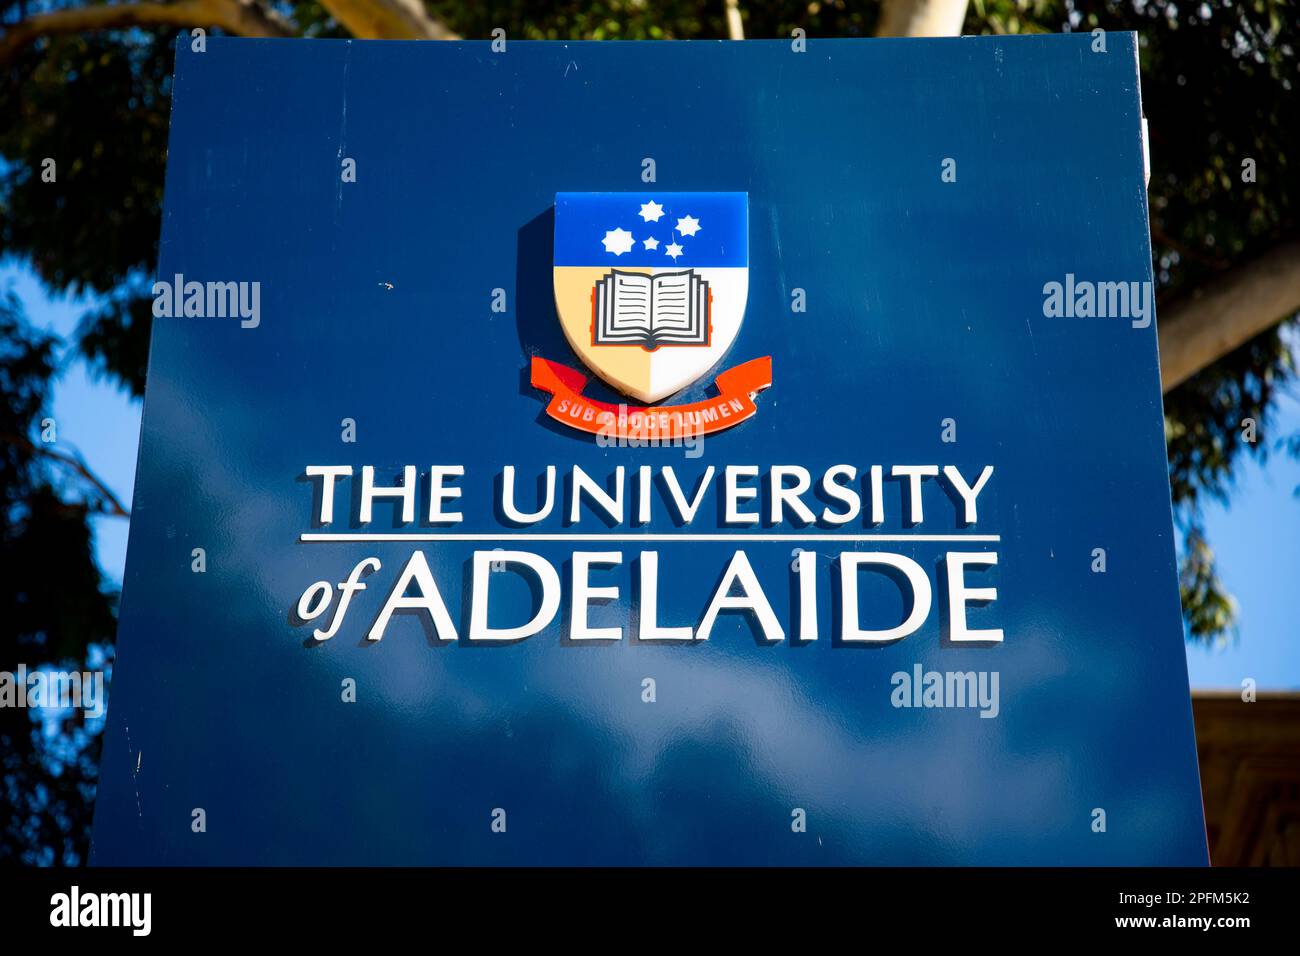 Adelaide, Australien - 1. Mai 2022: Die Universität von Adelaide wurde 1874 gegründet Stockfoto